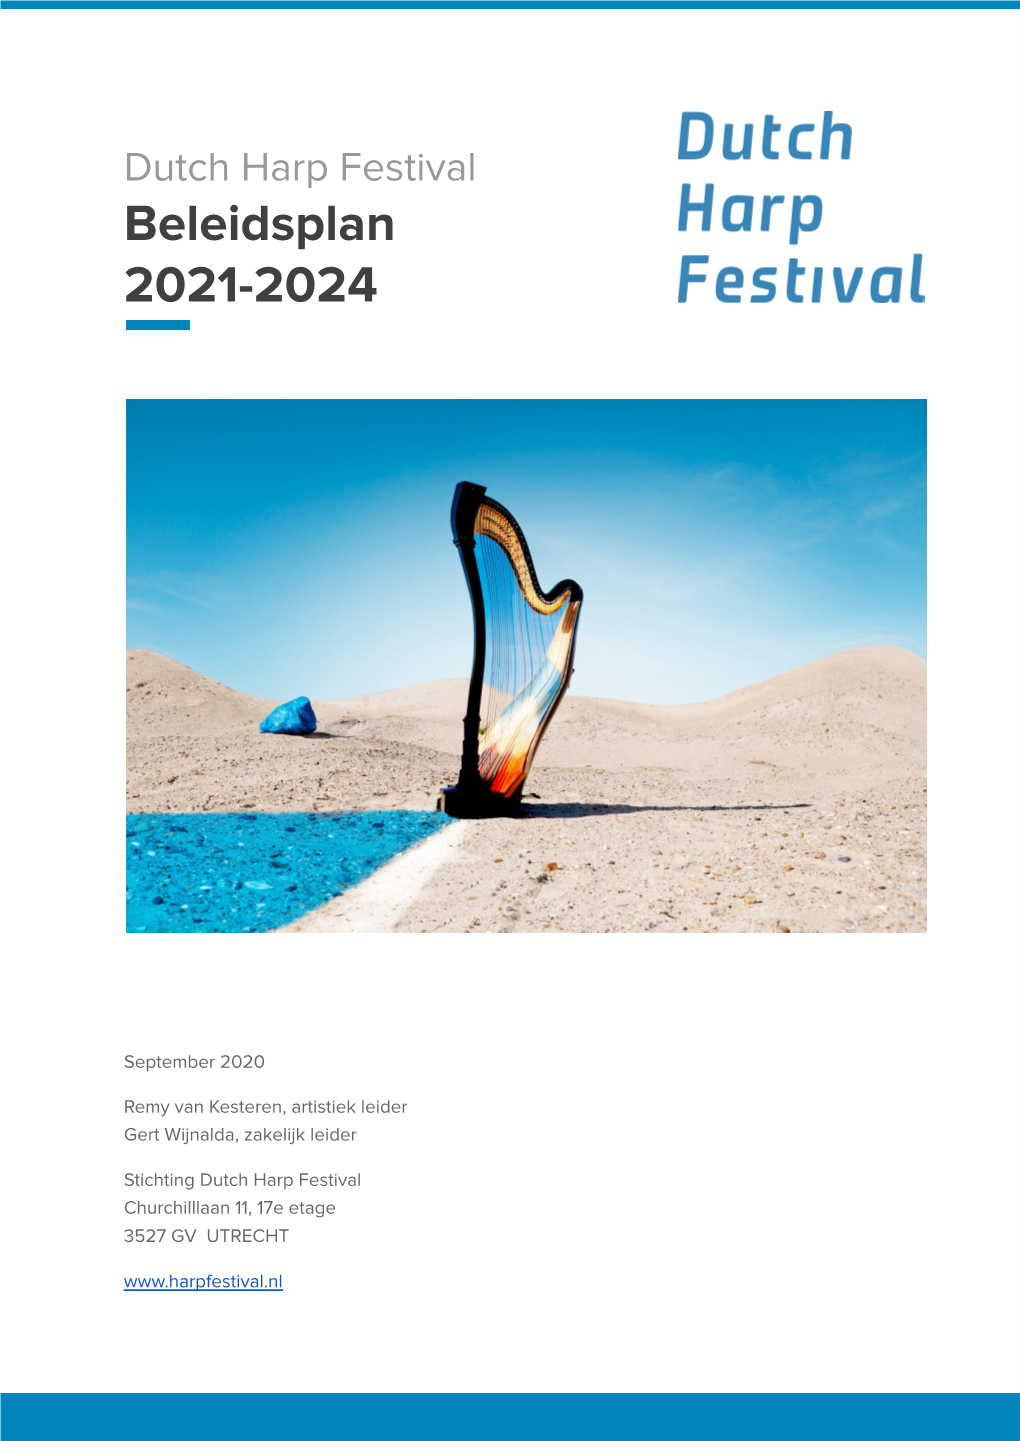 DHF Beleidsplan 2021-2024 (Versie Sep 2020)